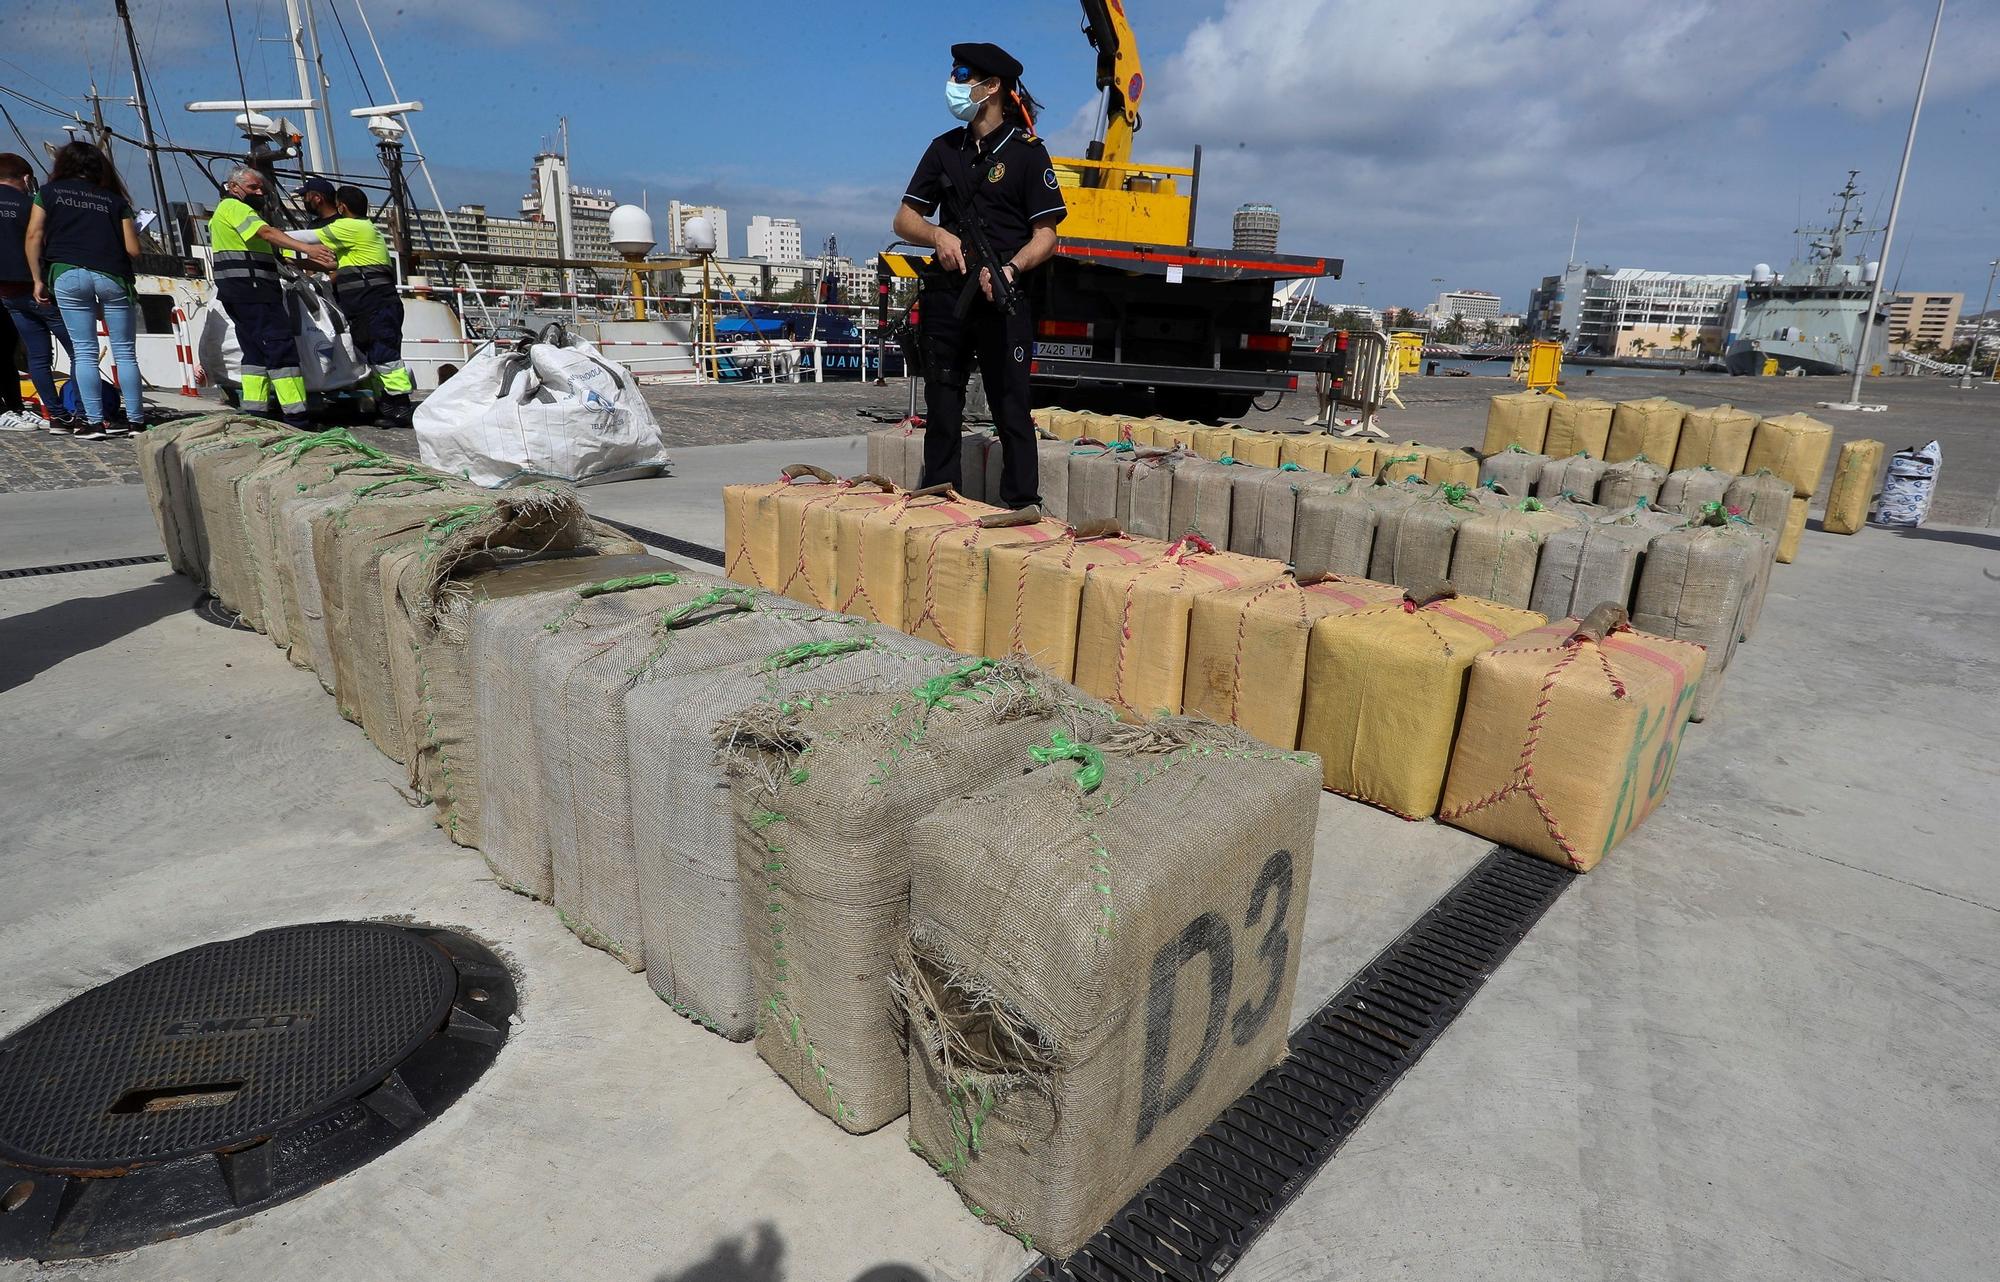 Vigilancia Aduanera intercepta 18 toneladas de hachís